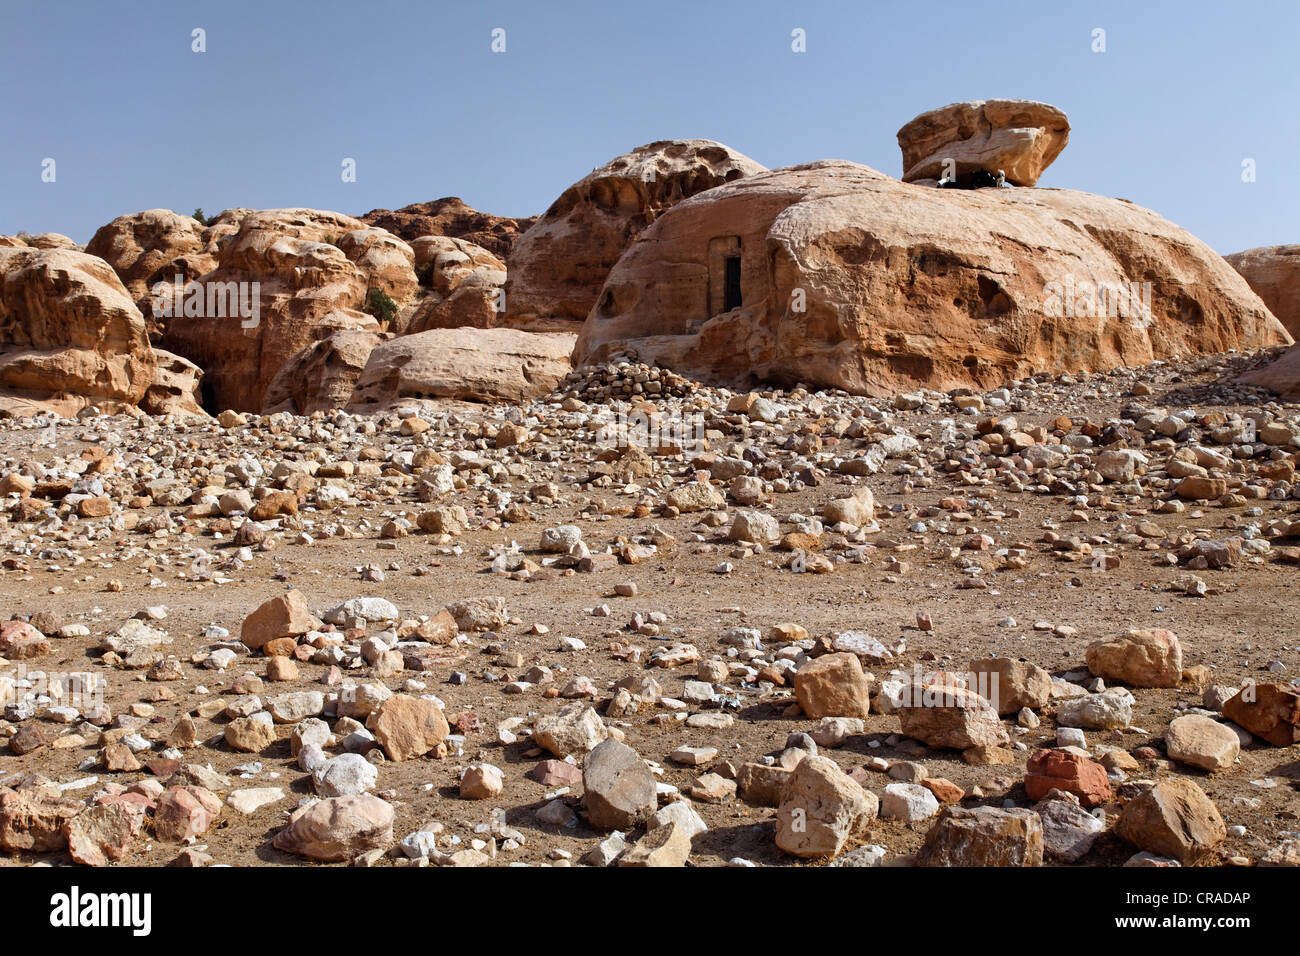 Rochers de grès, tombes, gravier, Little Petra, capitale des Nabatéens, rock city, monde de l'UNESCO Site Hertage Banque D'Images